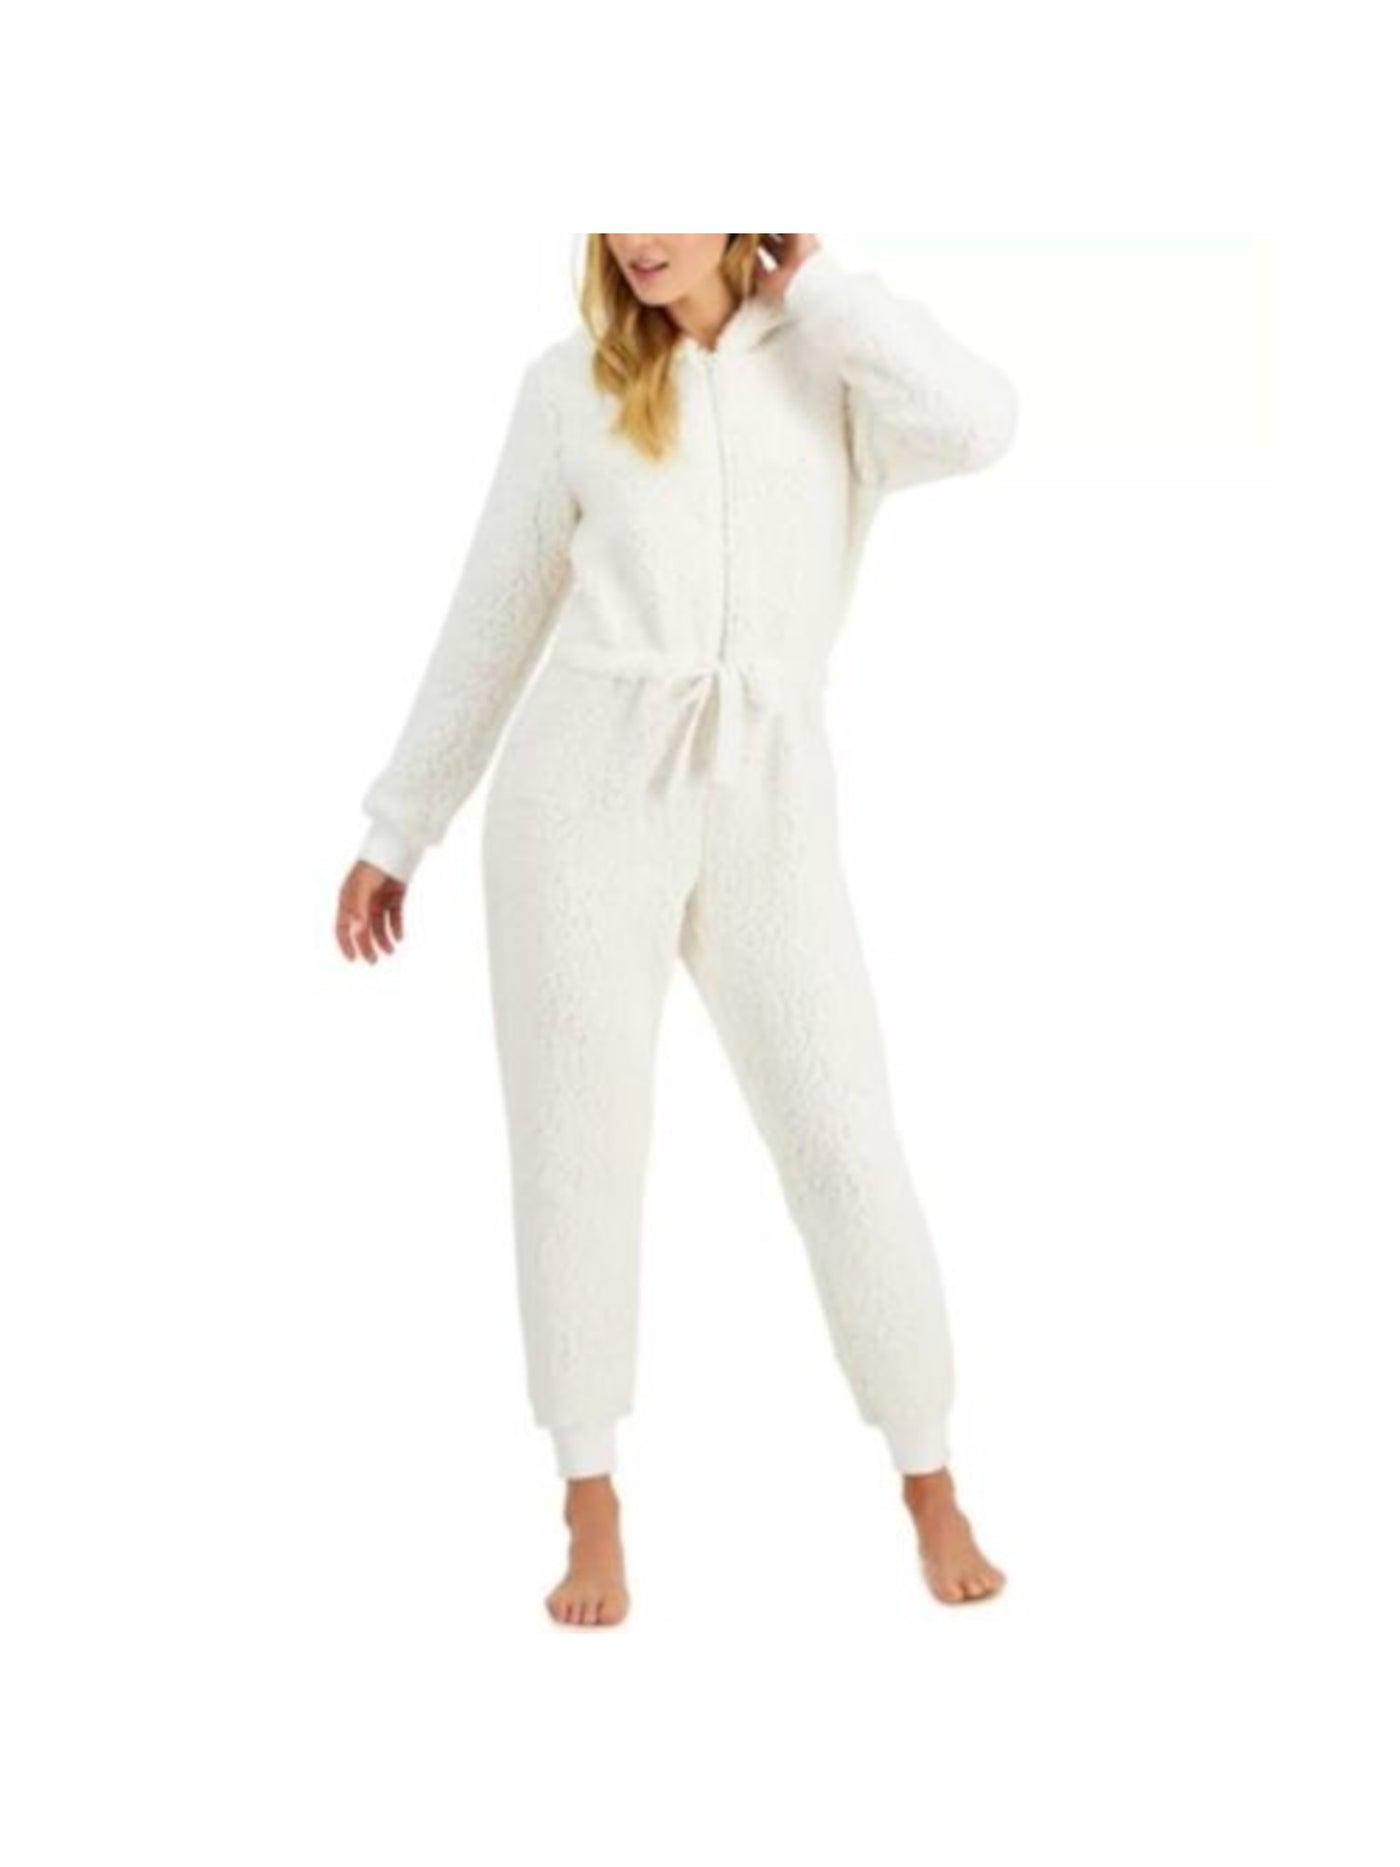 JENNI Intimates White Drawstring Hooded Tie Waist Sherpa Union Suit Pajamas XL